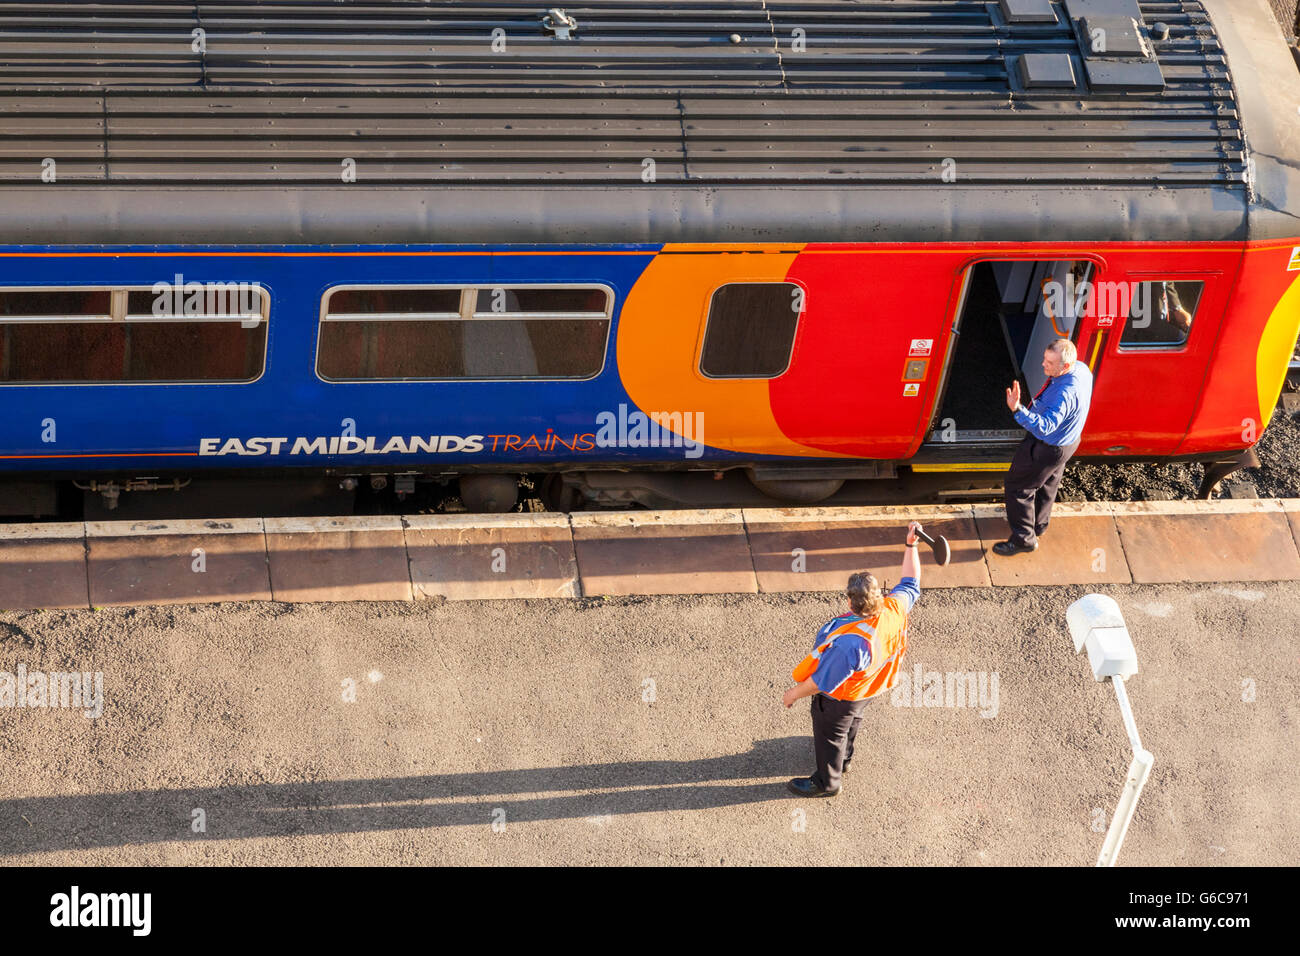 East Midlands Trains Zug bereit zu verlassen. Zug von einer Plattform am Bahnhof Nottingham, Nottingham, England, Großbritannien Stockfoto